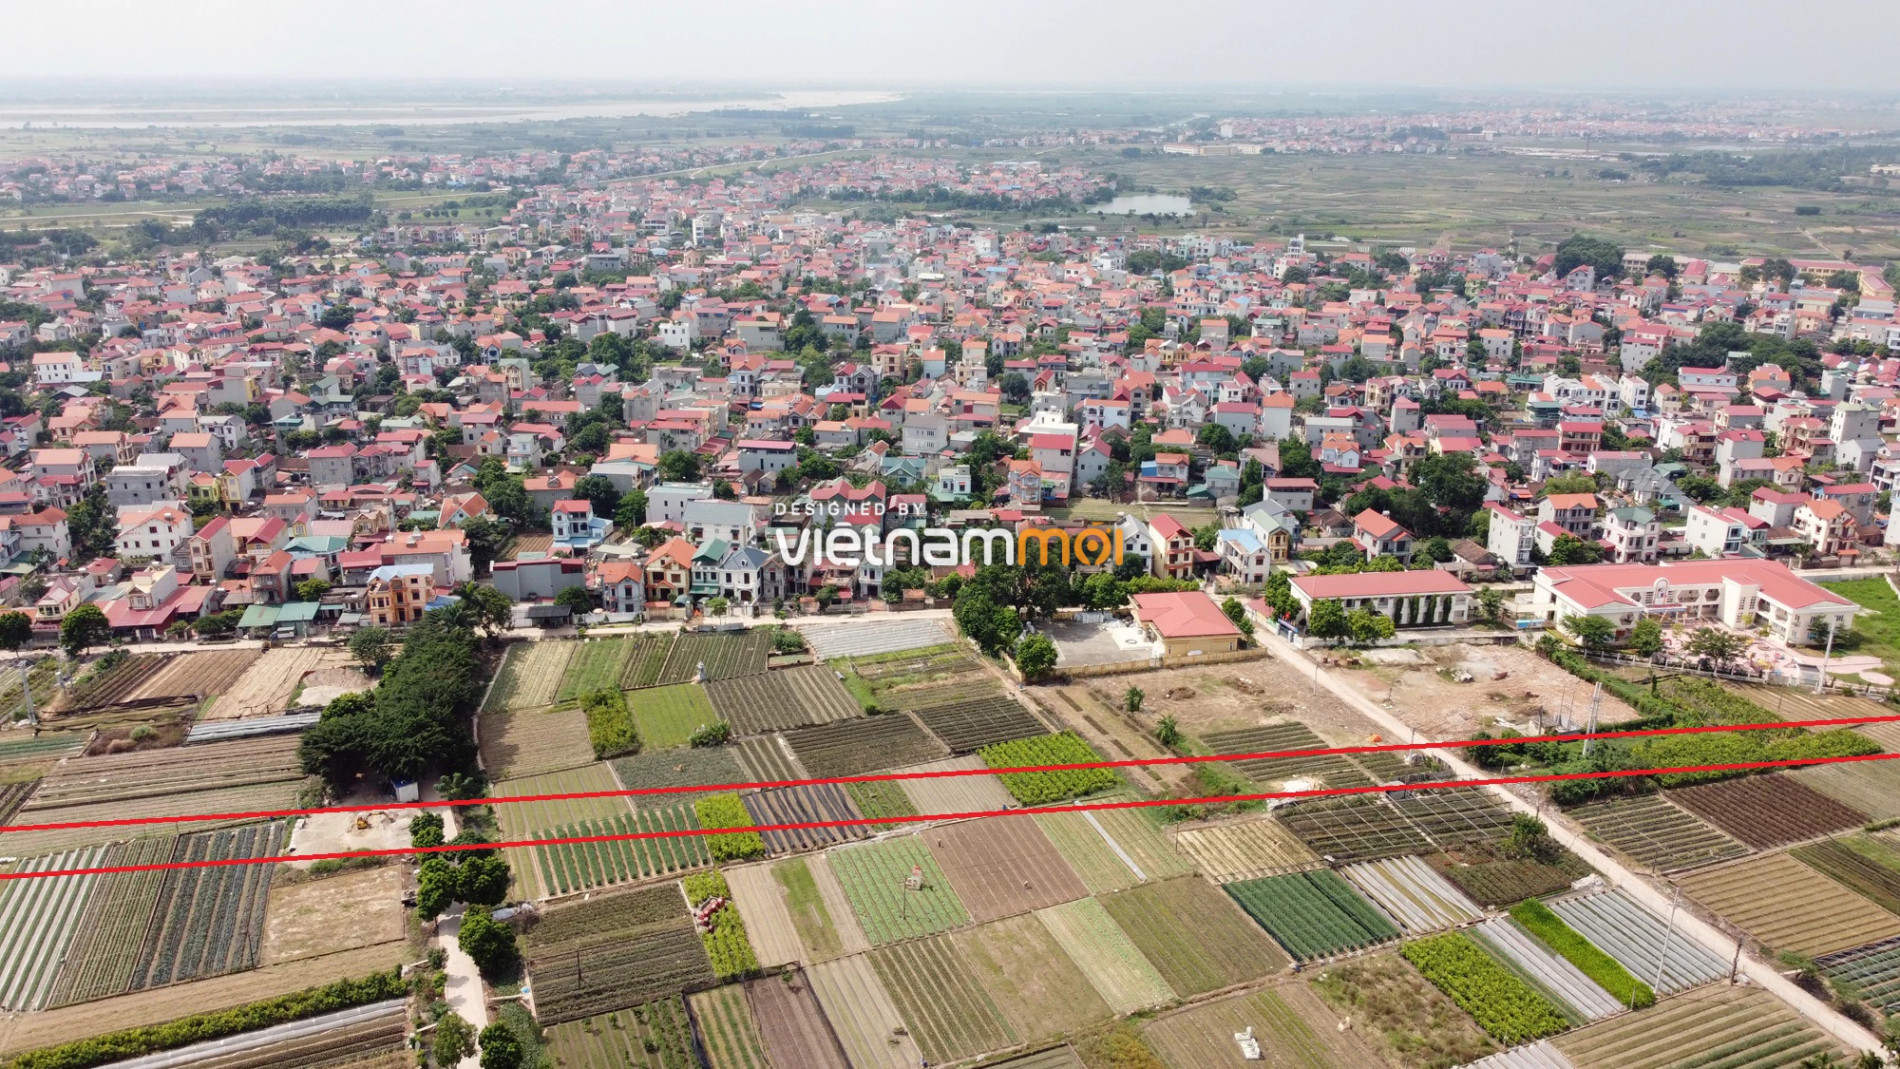 Những khu đất sắp thu hồi để mở đường ở xã Mê Linh, Mê Linh, Hà Nội (phần 1) - Ảnh 13.